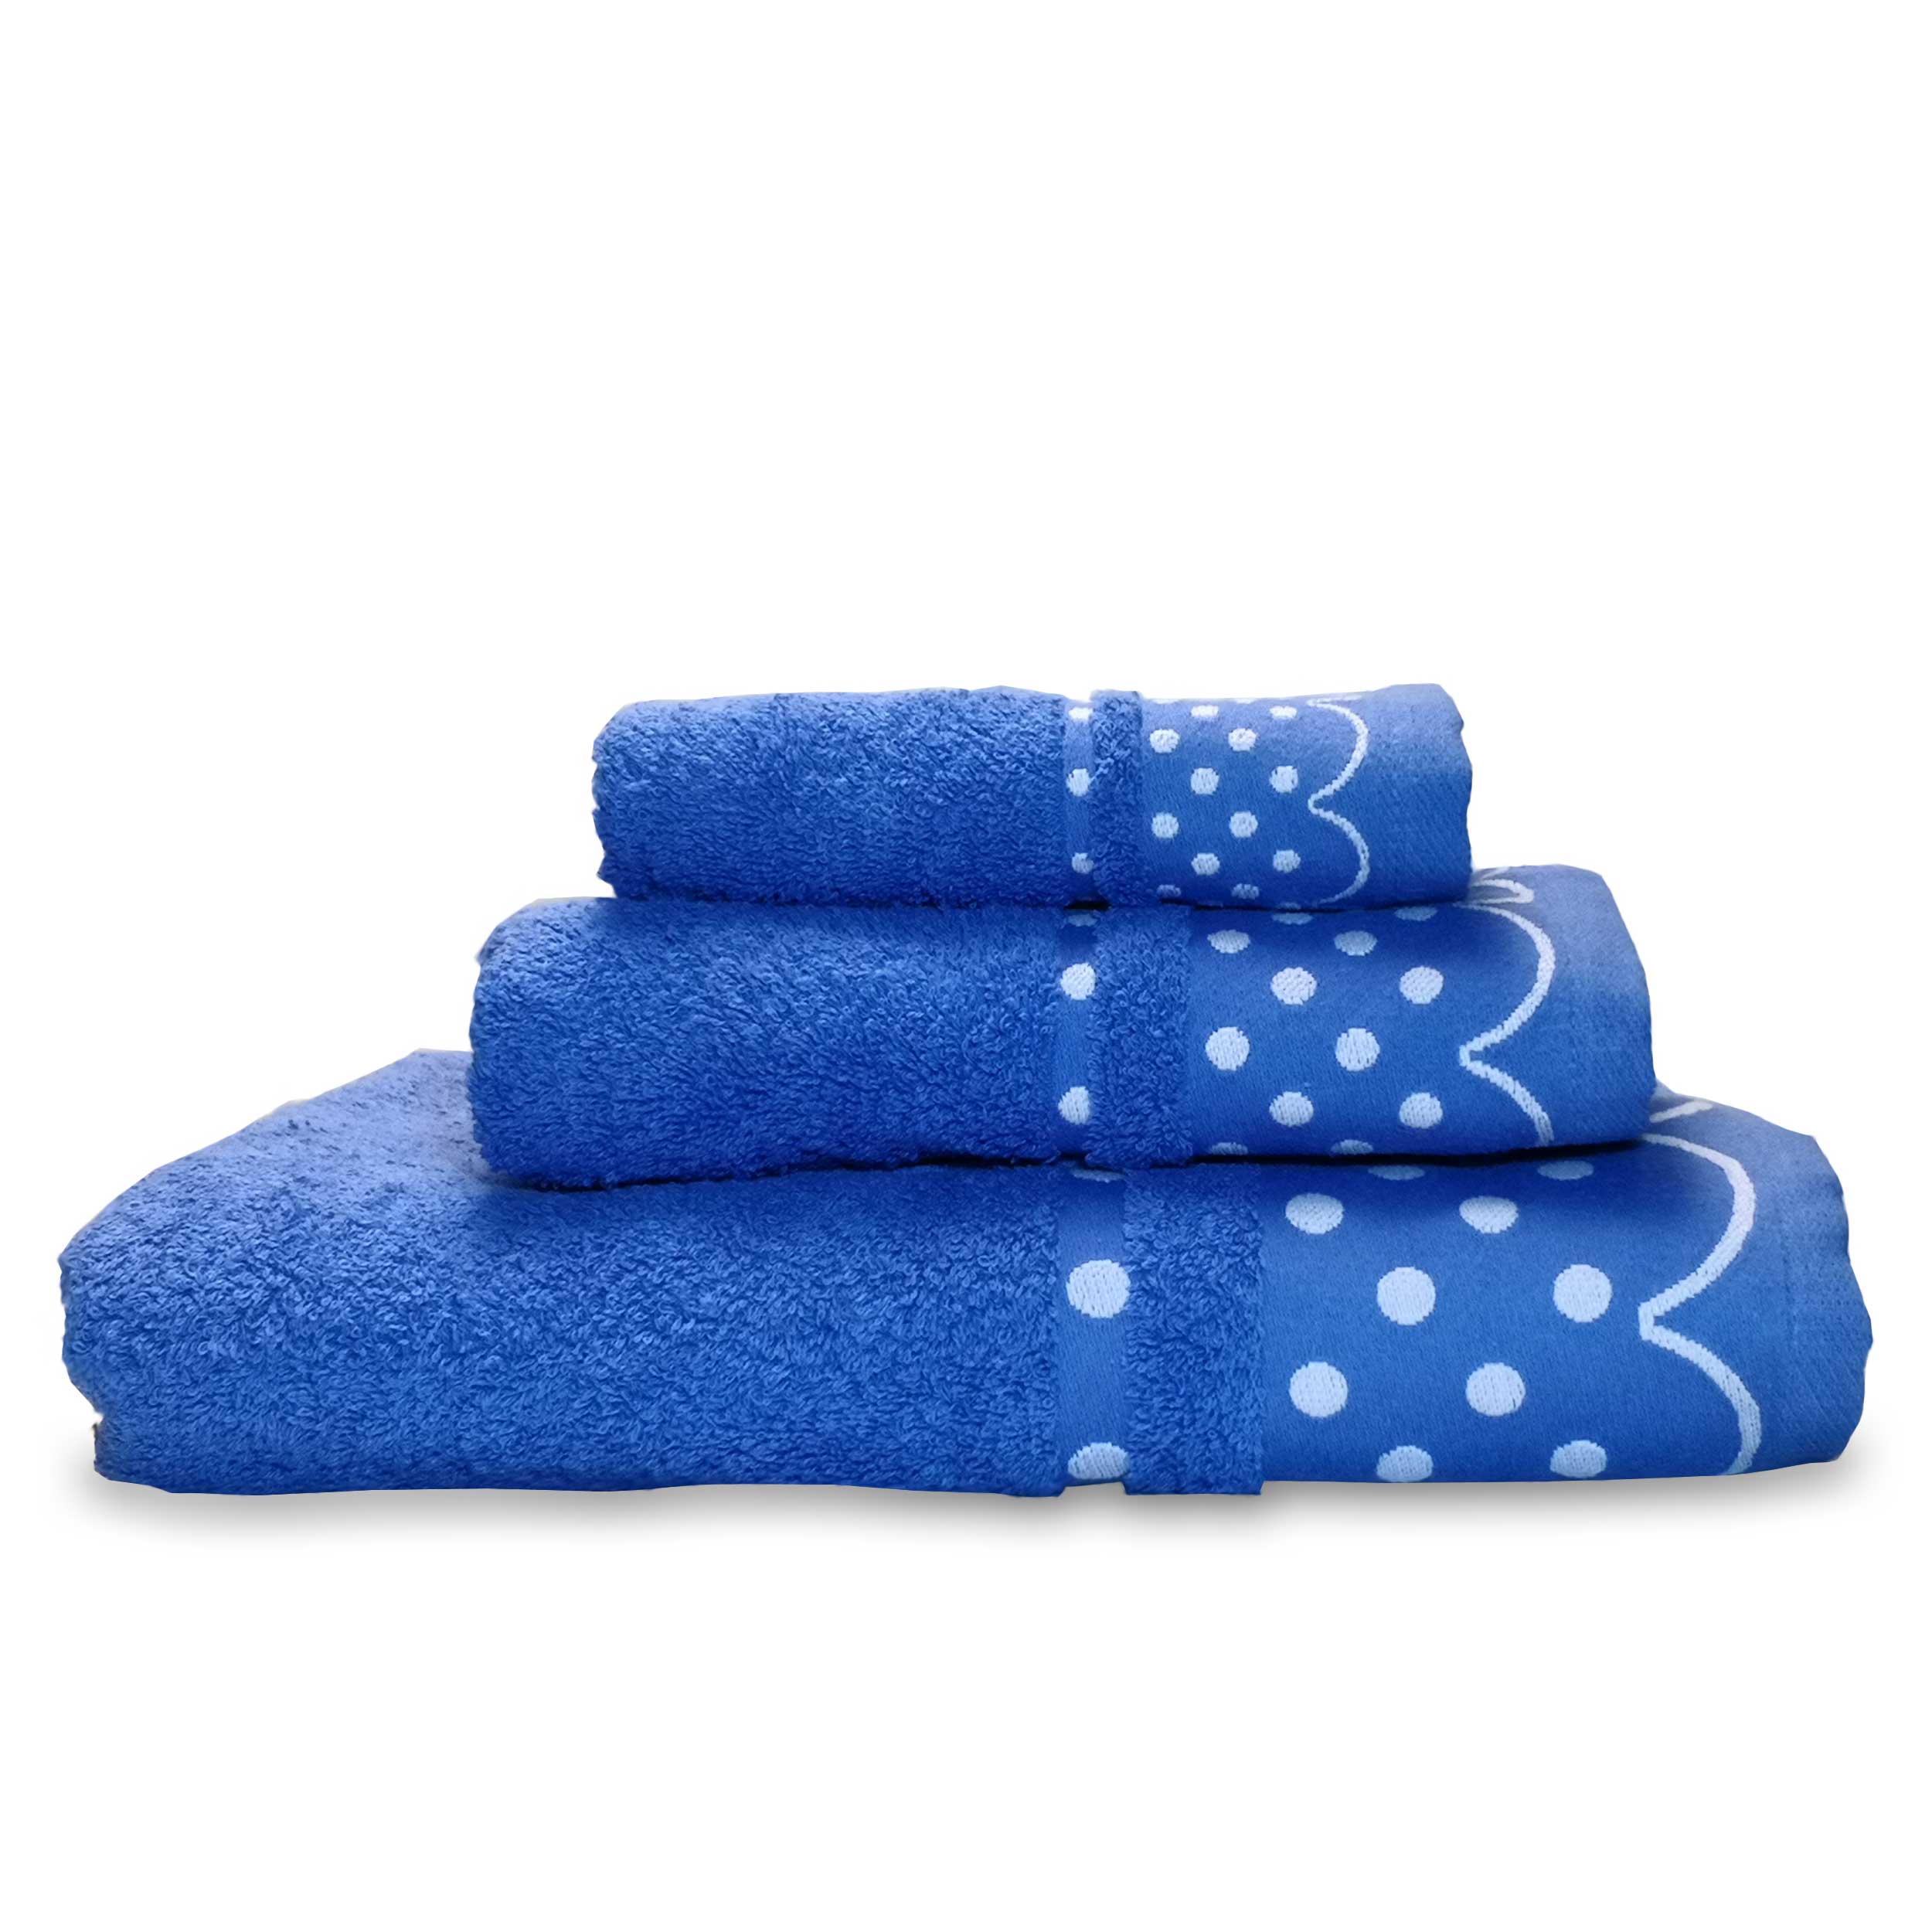 sigillato LegendZ blu marino palestra allenamento nuoto sport in cotone egiziano fine 5 colori Set di asciugamani da fitness scomparto con cerniera con 2 tasche XXXL antibatterico 